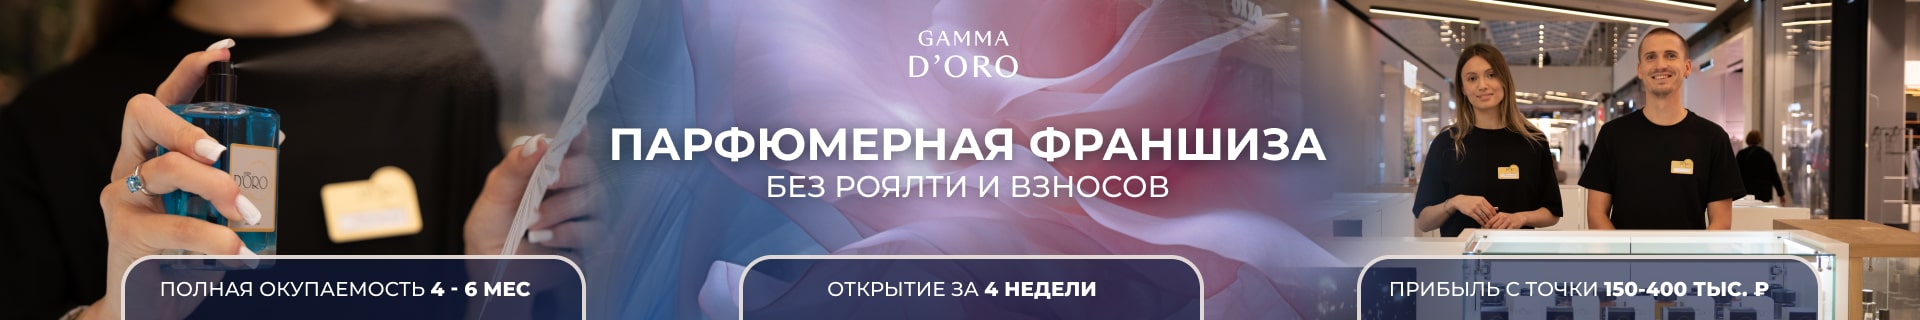 Франшиза магазина парфюмерии Gamma D’ORO